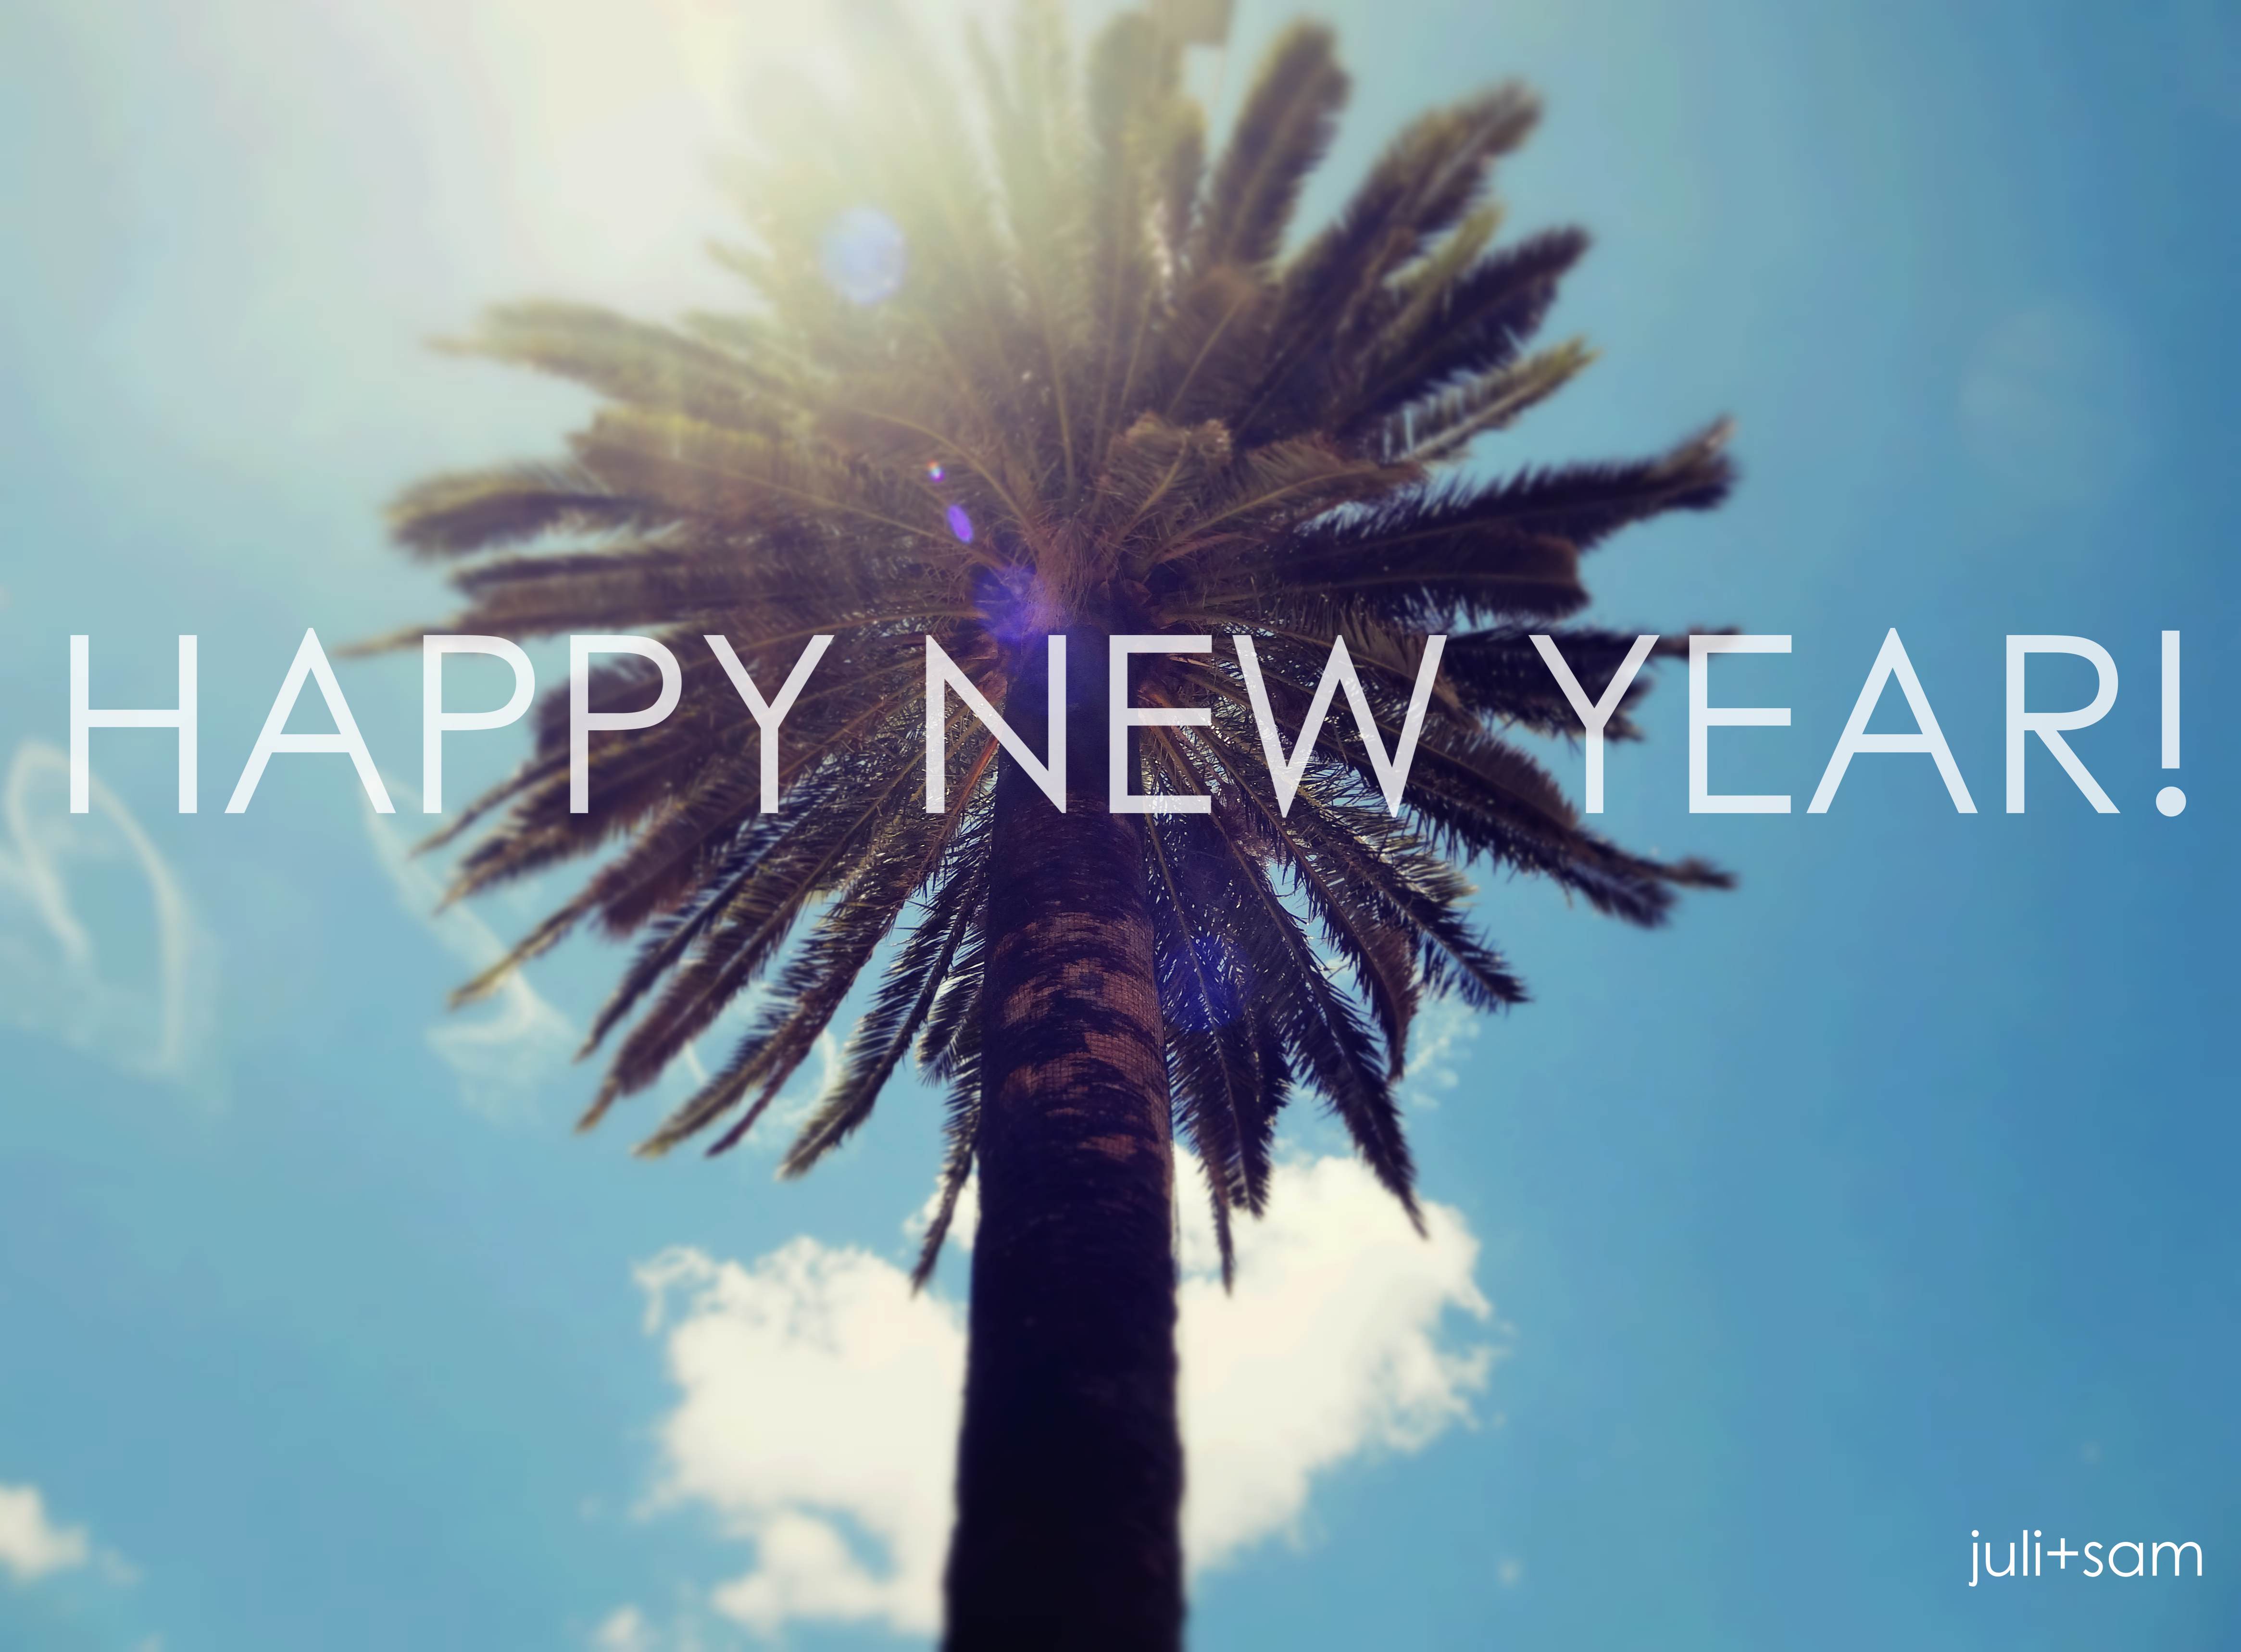 Happy New Year 2014! Marzeń spełnienia